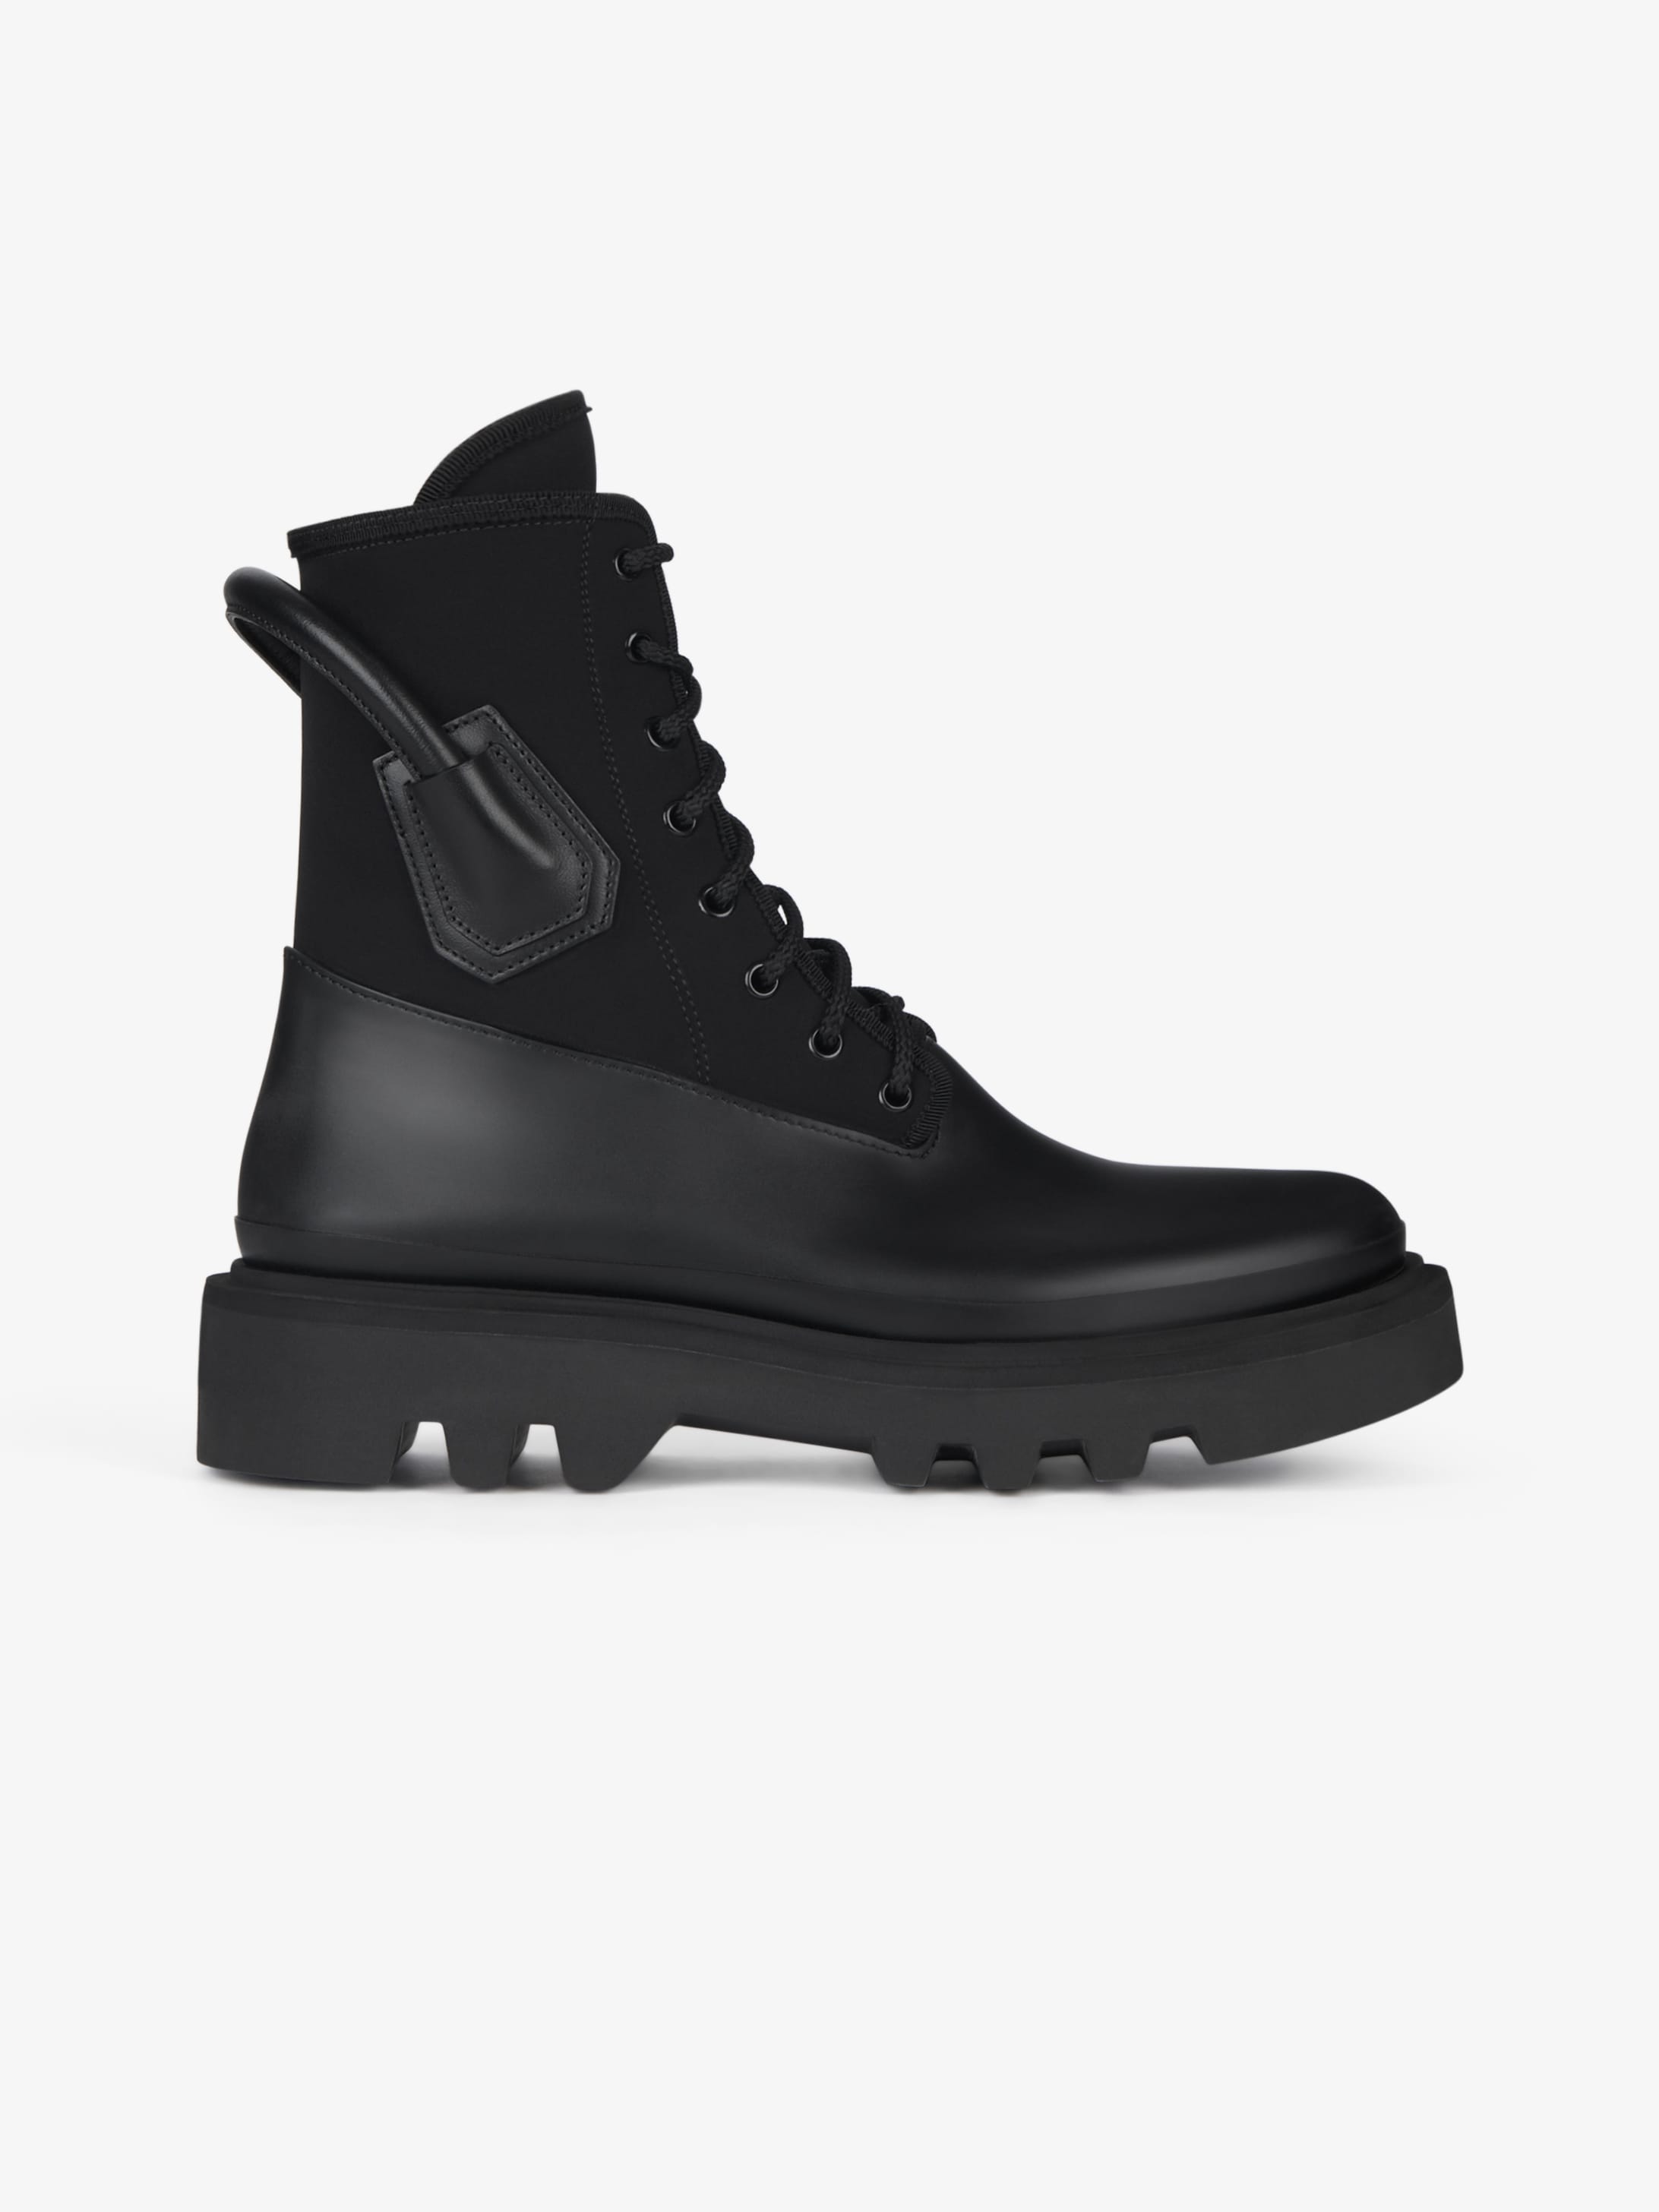 Combat boots in rubber neopren and 